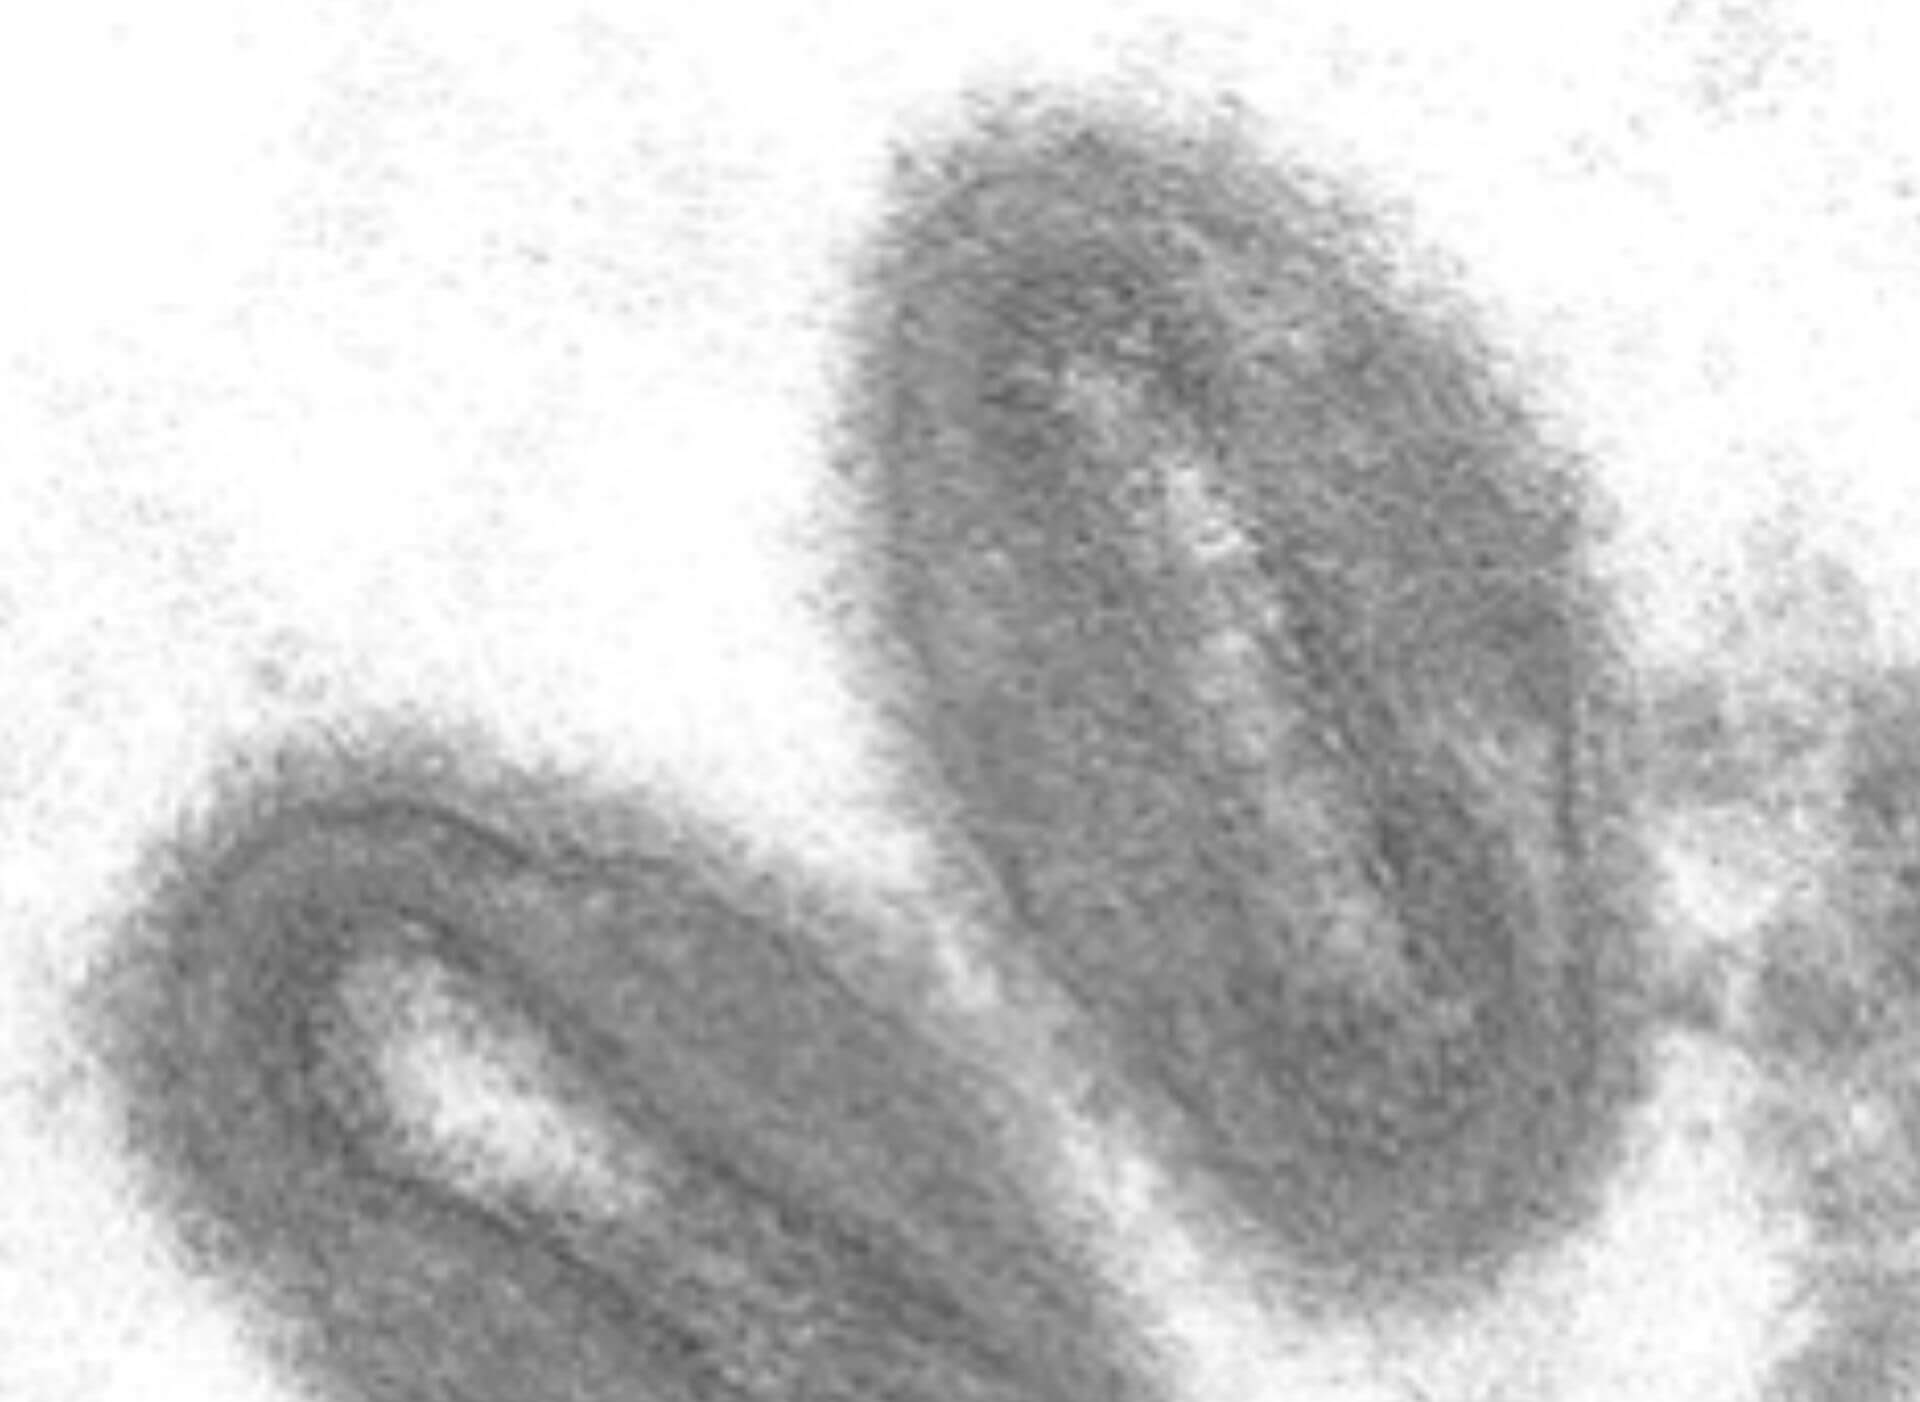 Affenpockenvirus